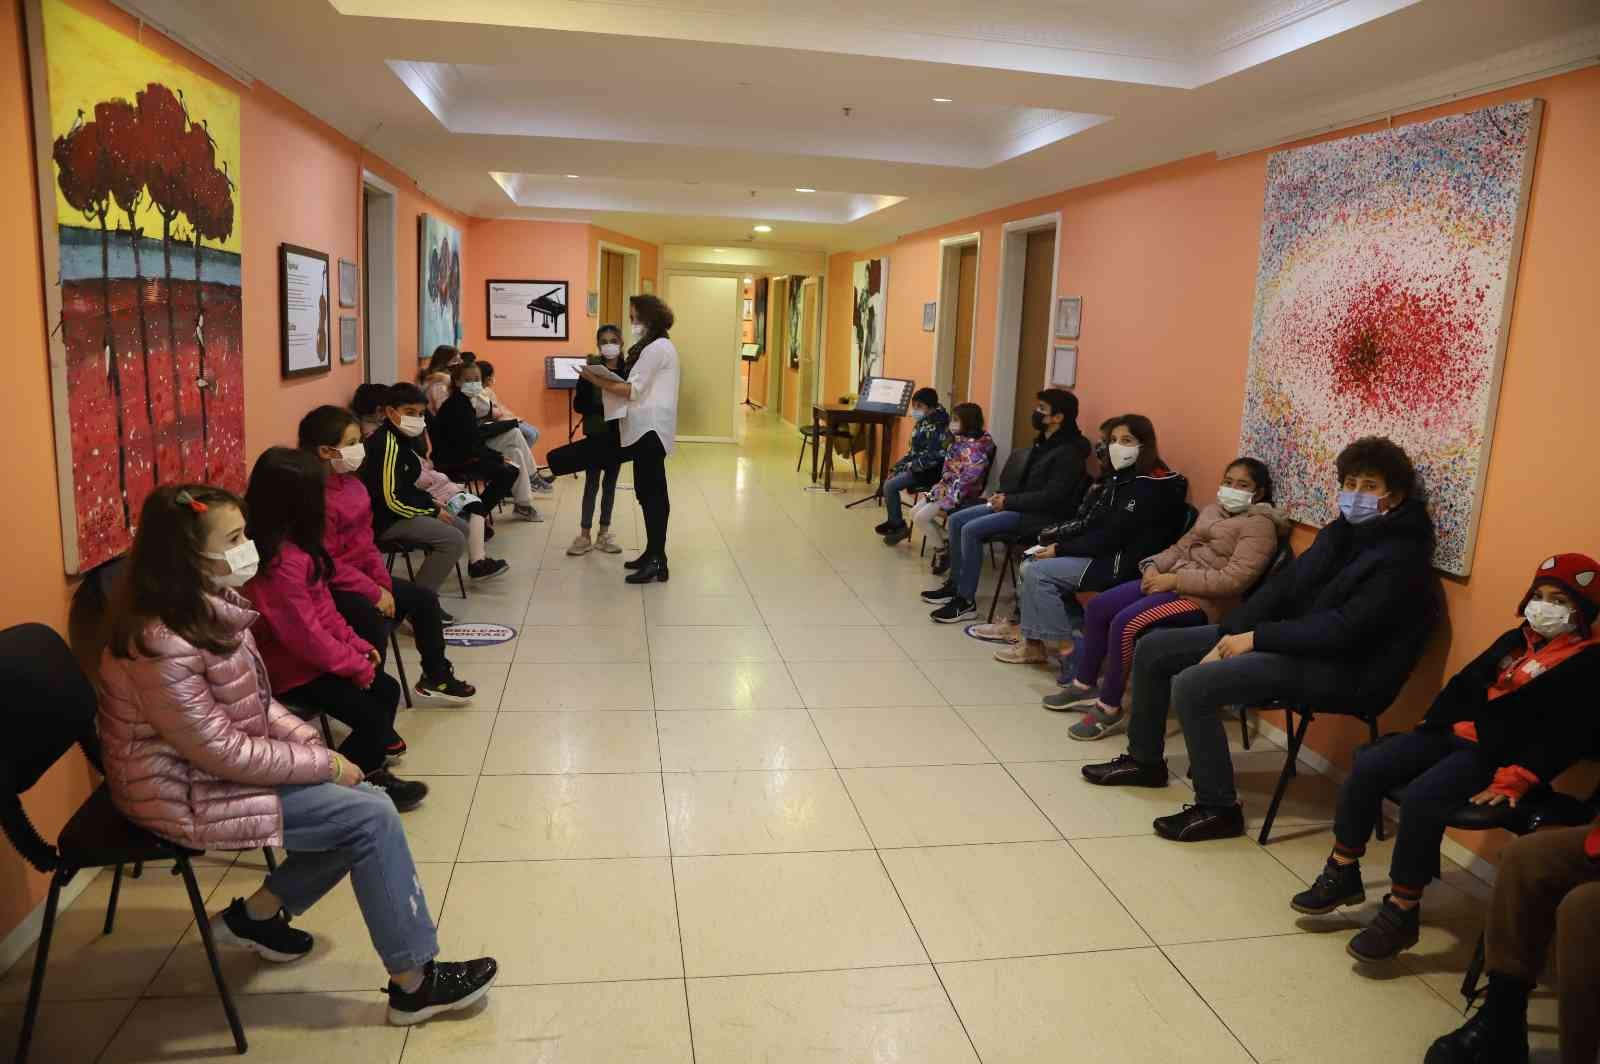 Kartal Belediyesi Sanat Akademisi yetenek sınavlarına rekor başvuru #istanbul